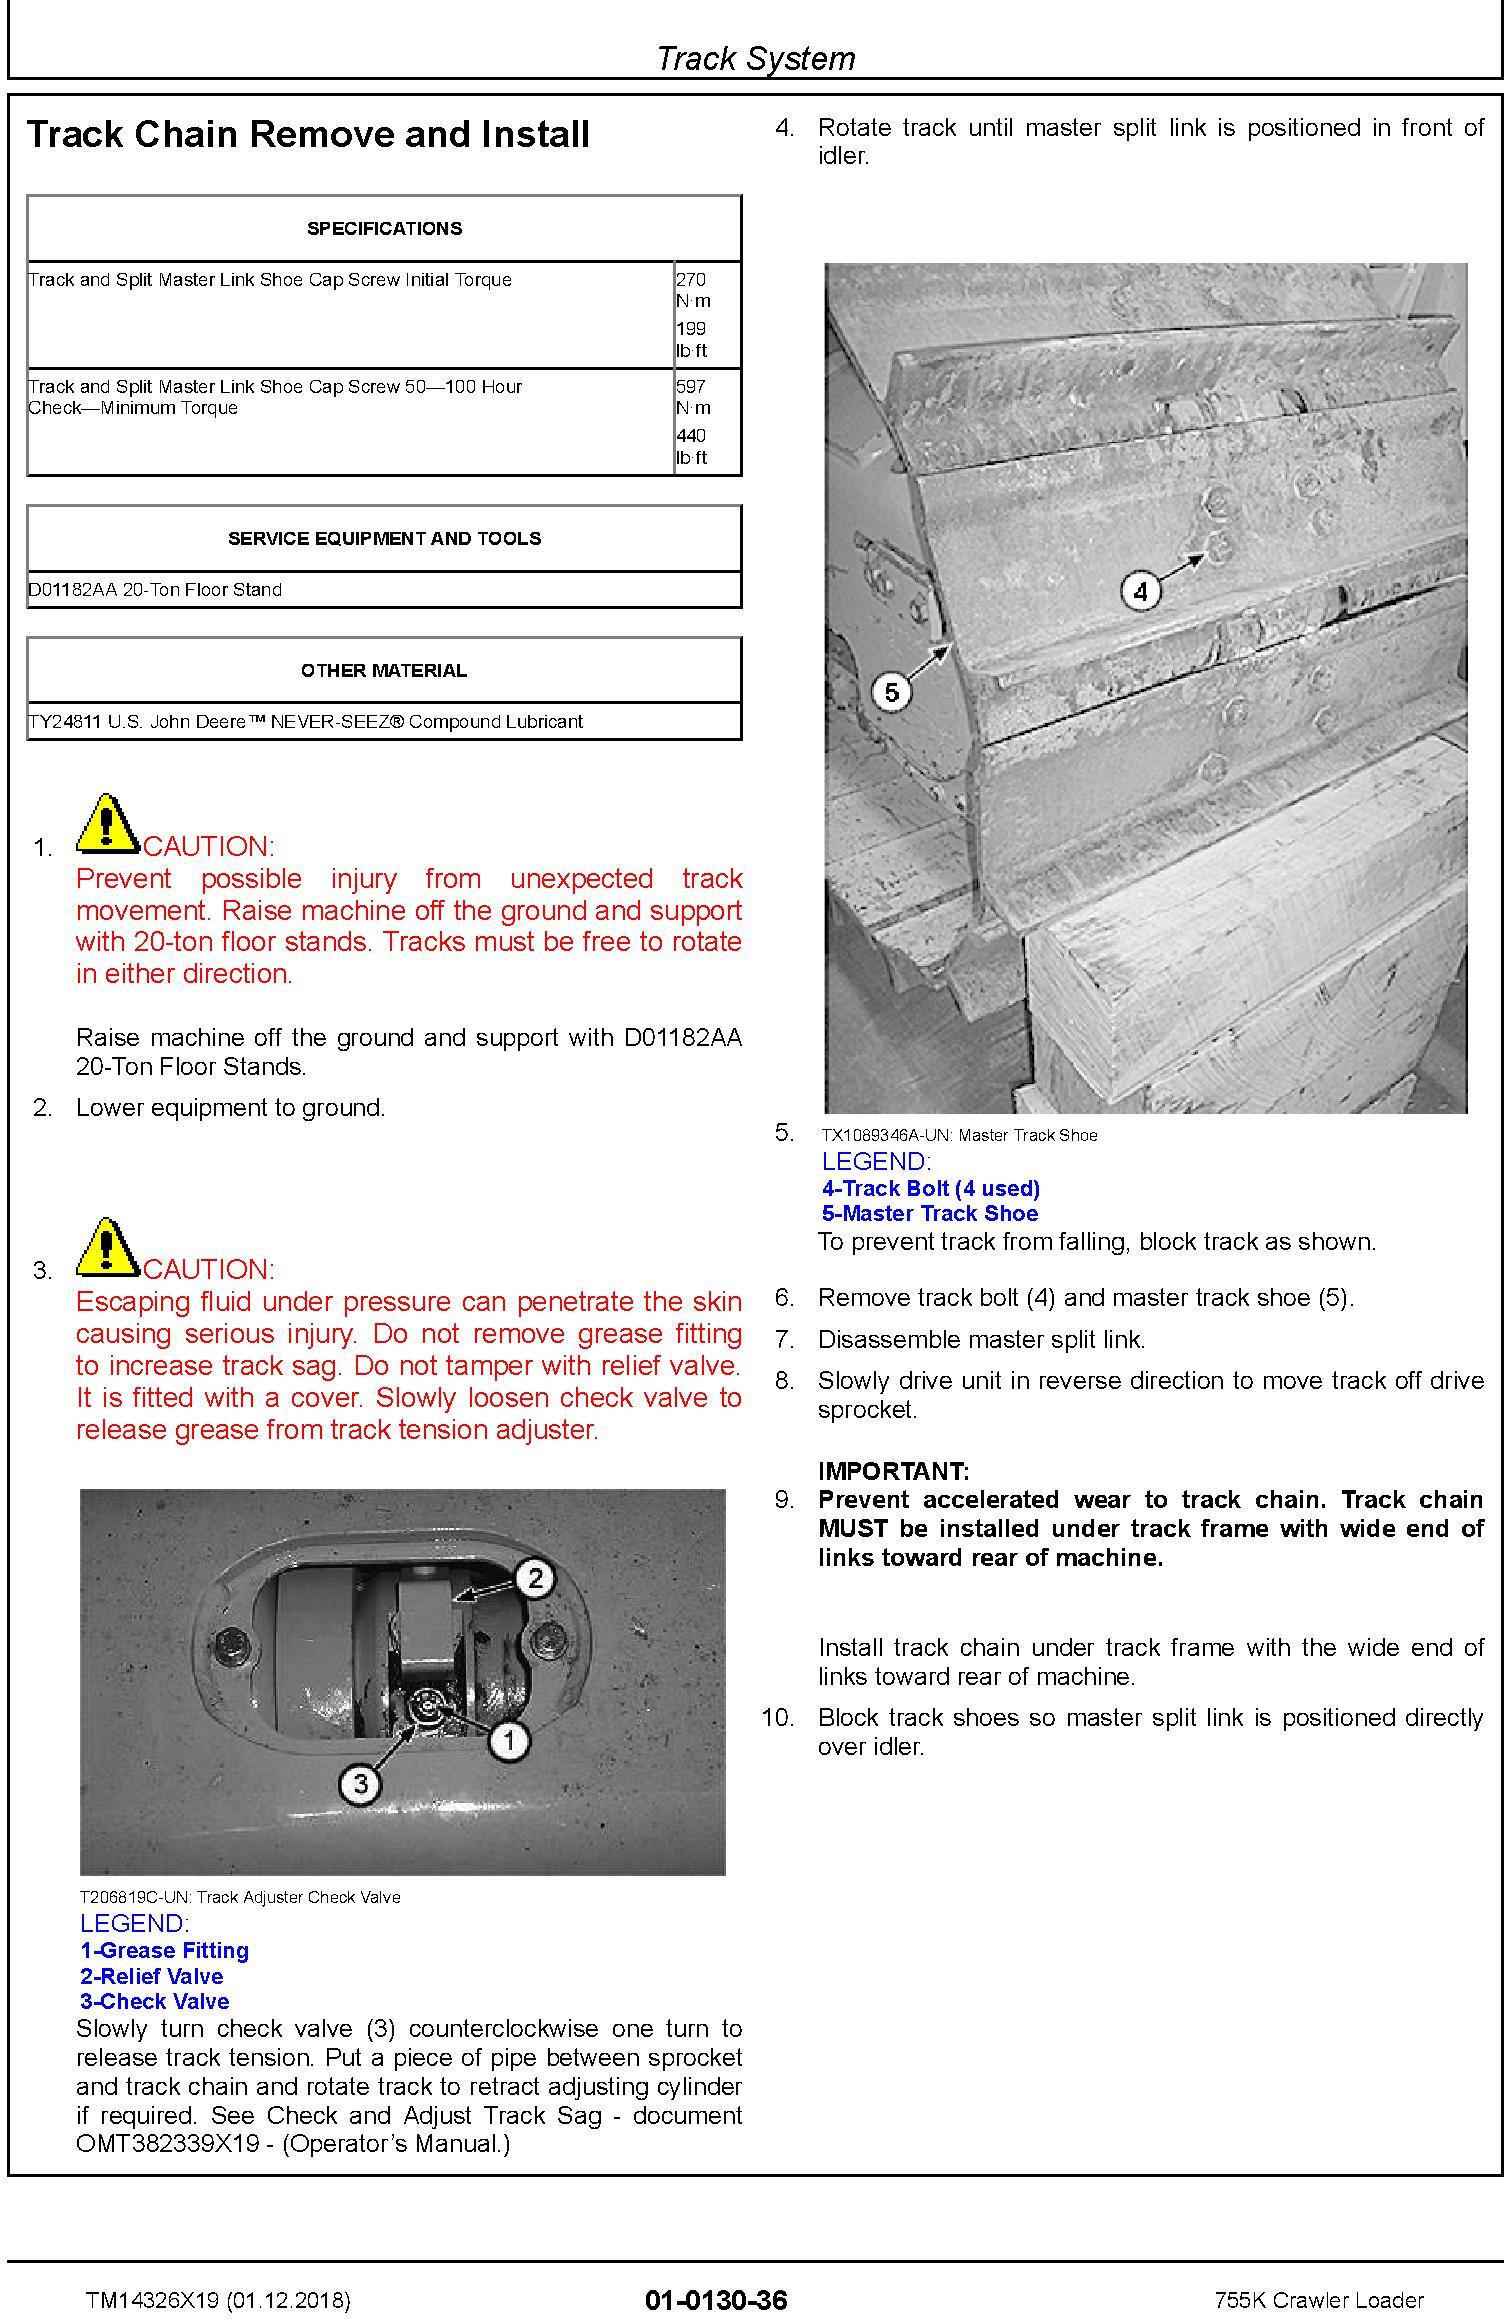 John Deere 755K Crawler Loader Repair Technical Manual (TM14326X19) - 2